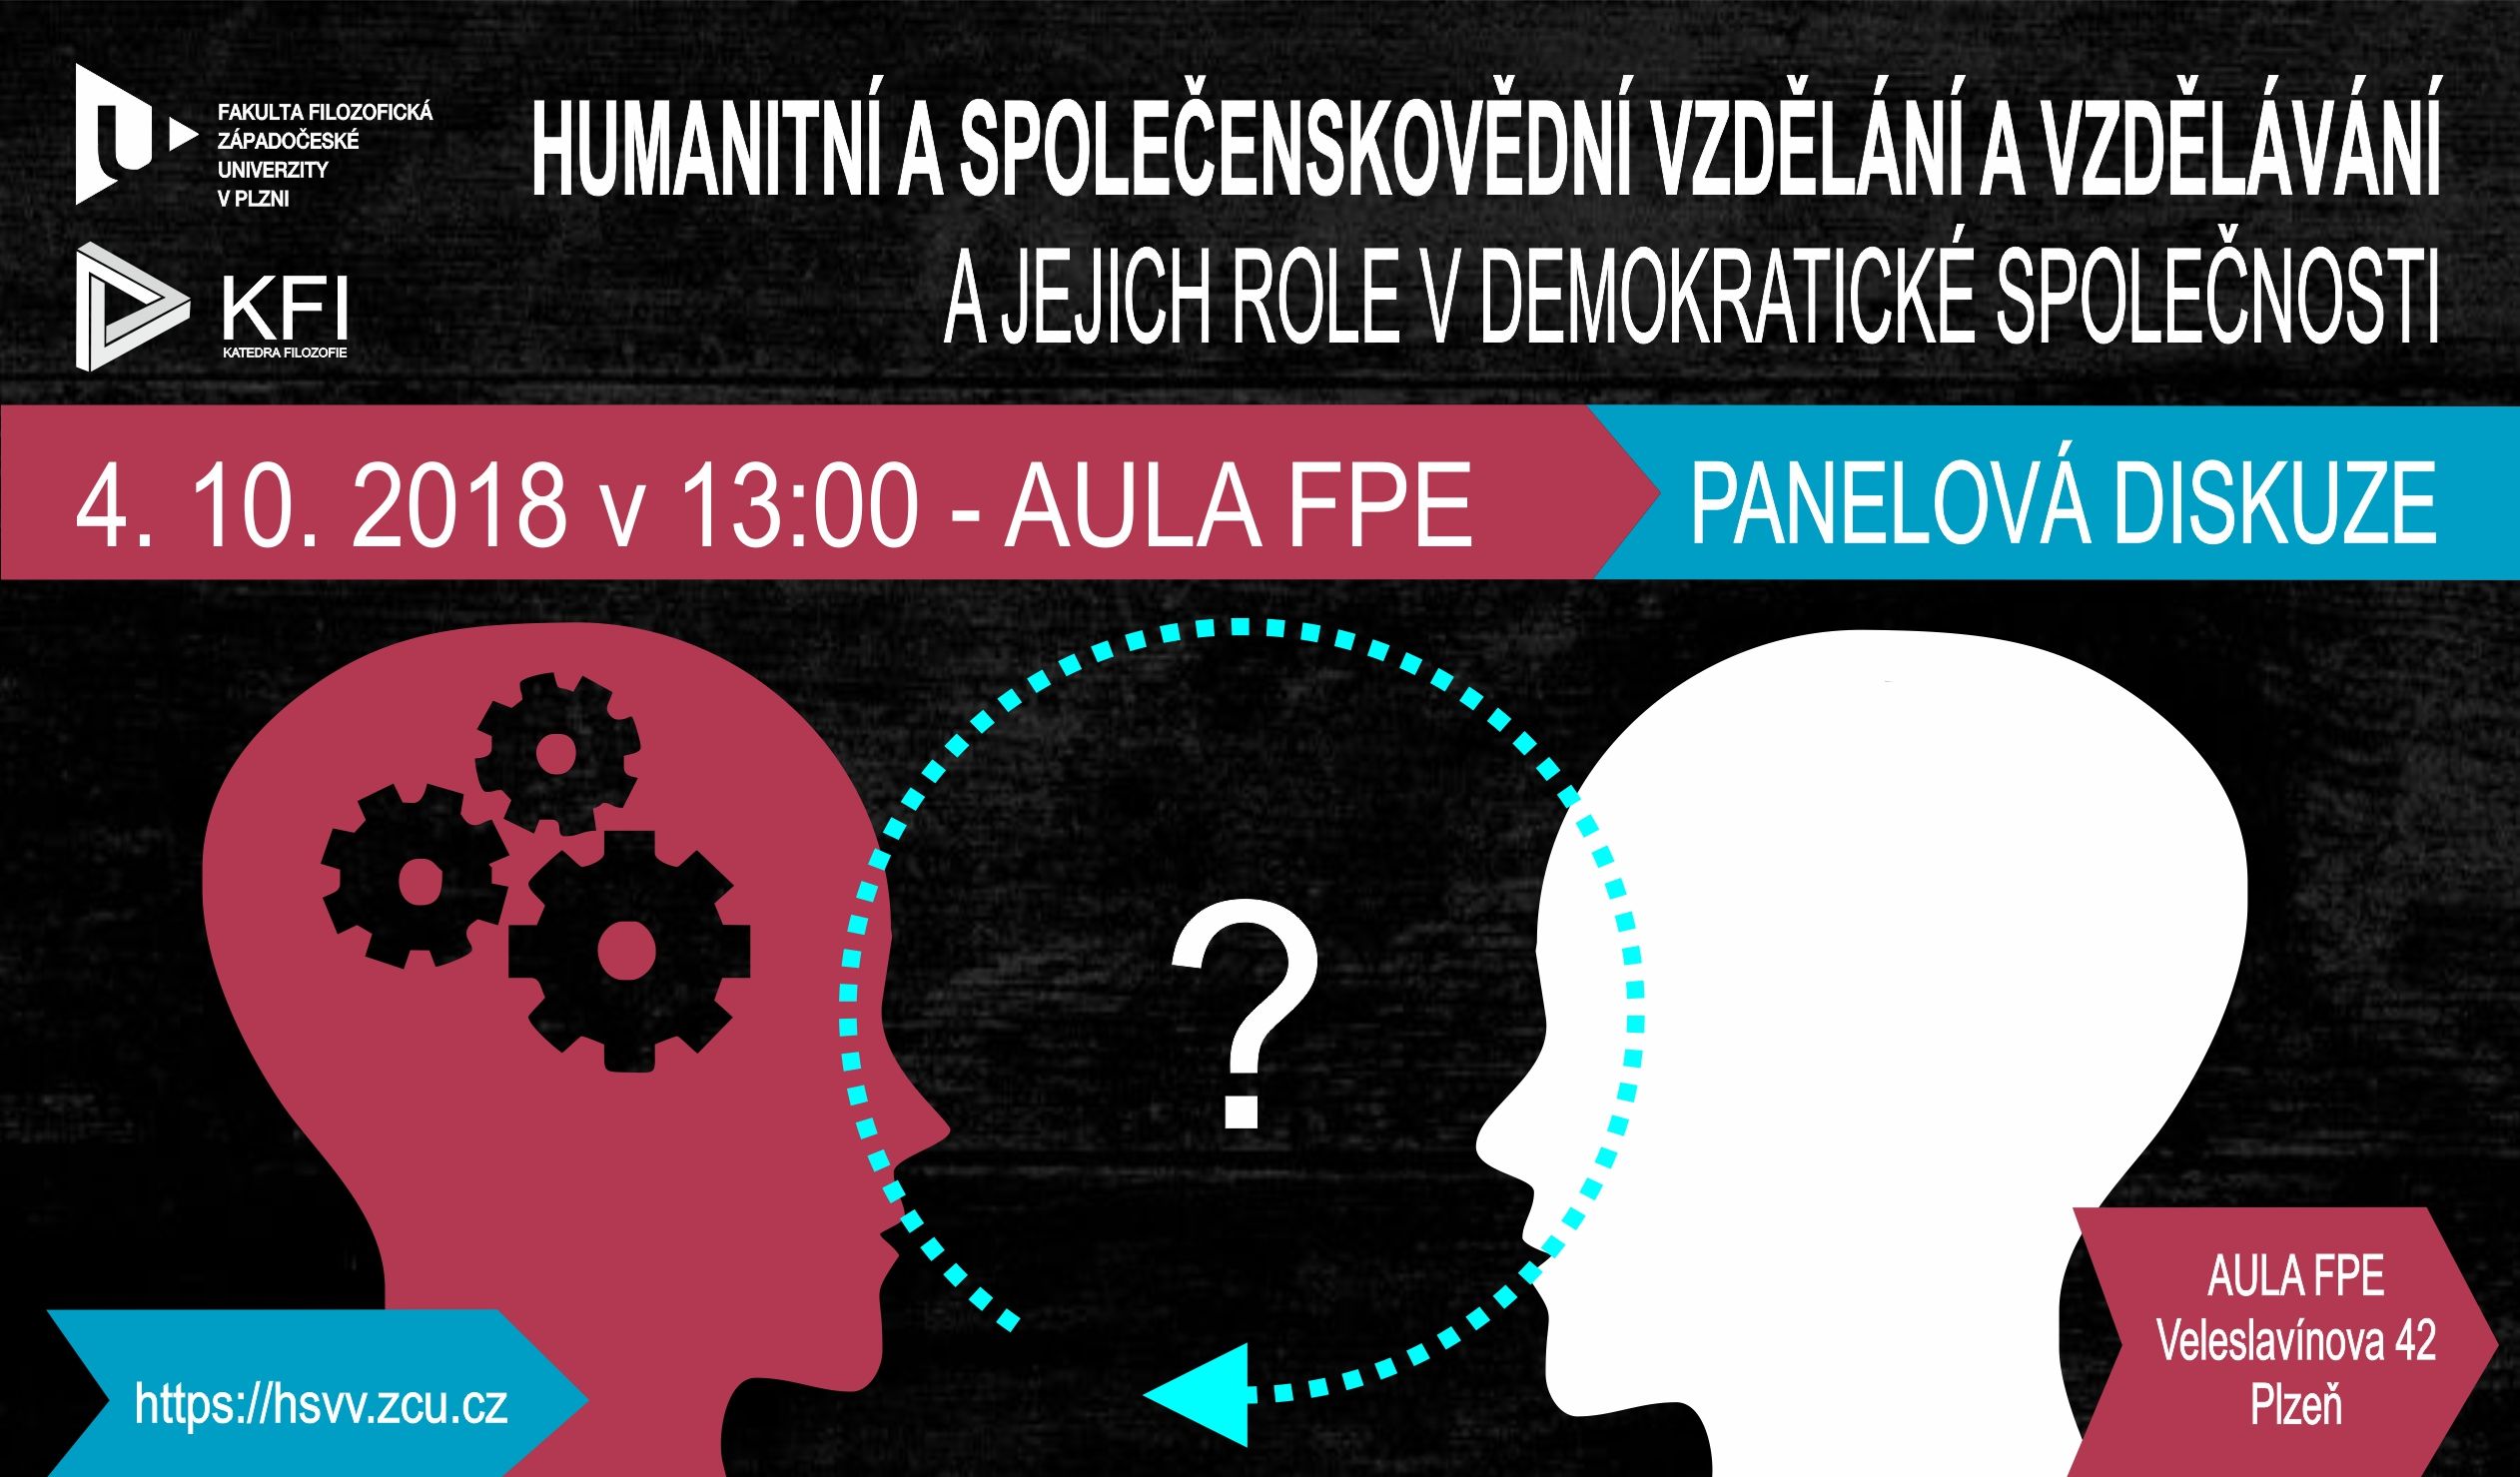 Panelová diskuze „Humanitní a společenskovědní vzdělání a vzdělávání a jejich role v demokratické společnosti“